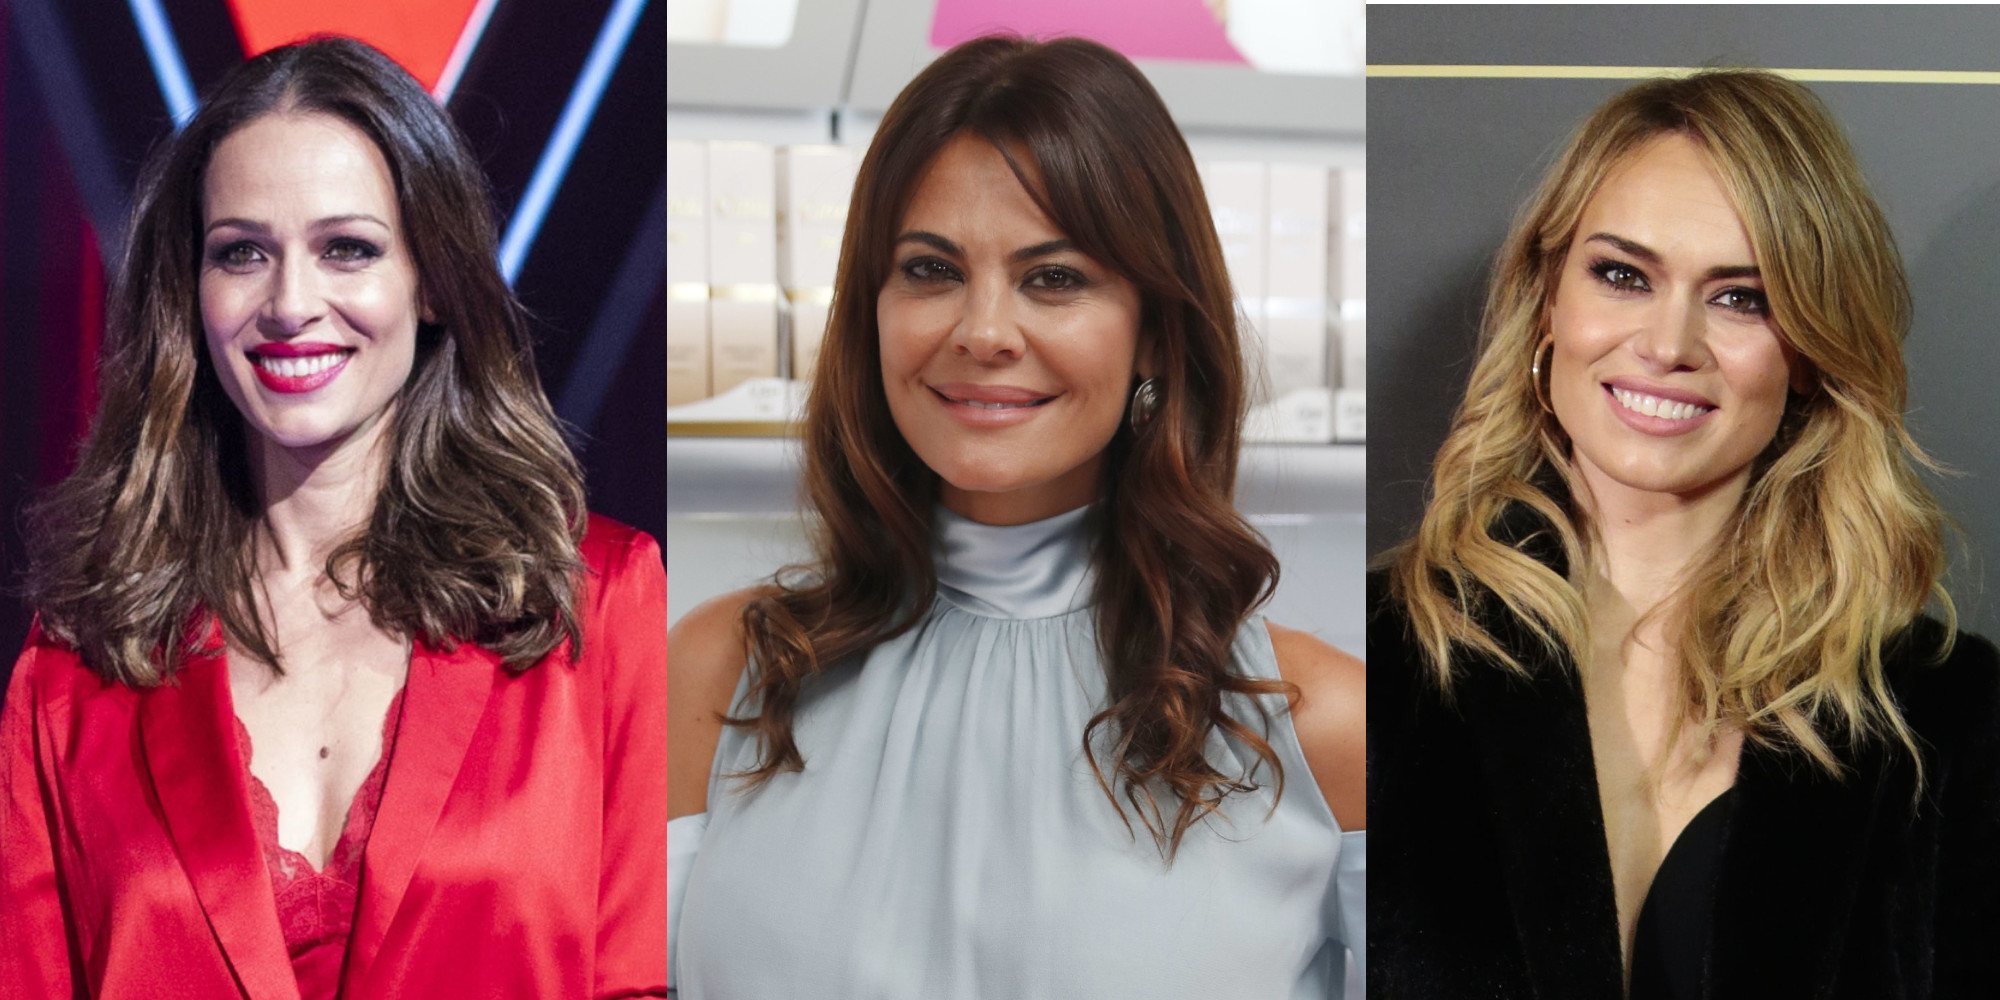 Patricia Conde, Eva González, Lorena Bernal...: Las 6 Misses españolas que dieron el salto a la televisión